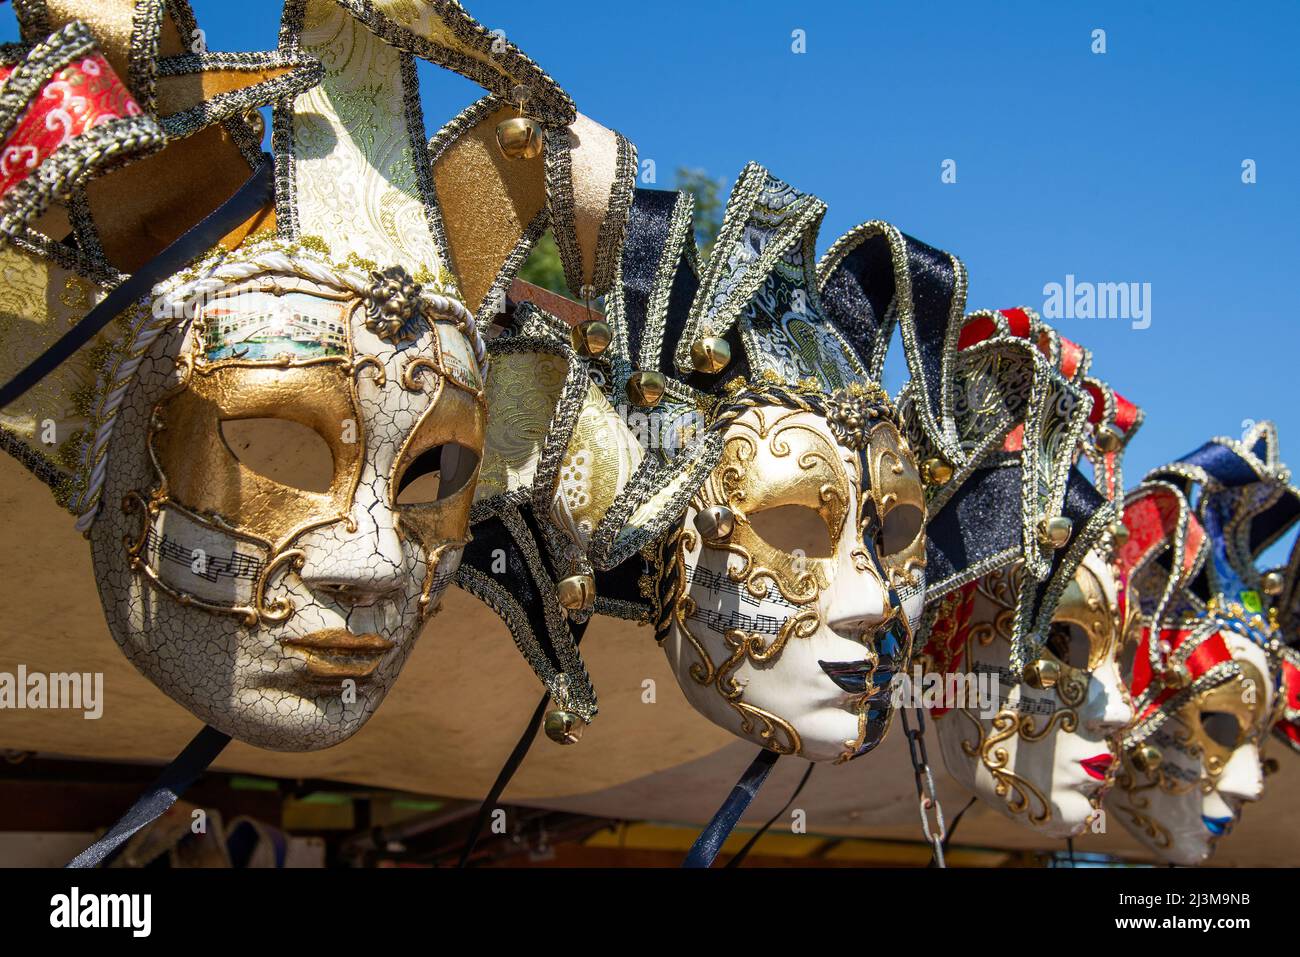 VENEZIA, ITALIA - 26 SETTEMBRE 2017: Primo piano delle maschere veneziane ricordo in una giornata di sole Foto Stock